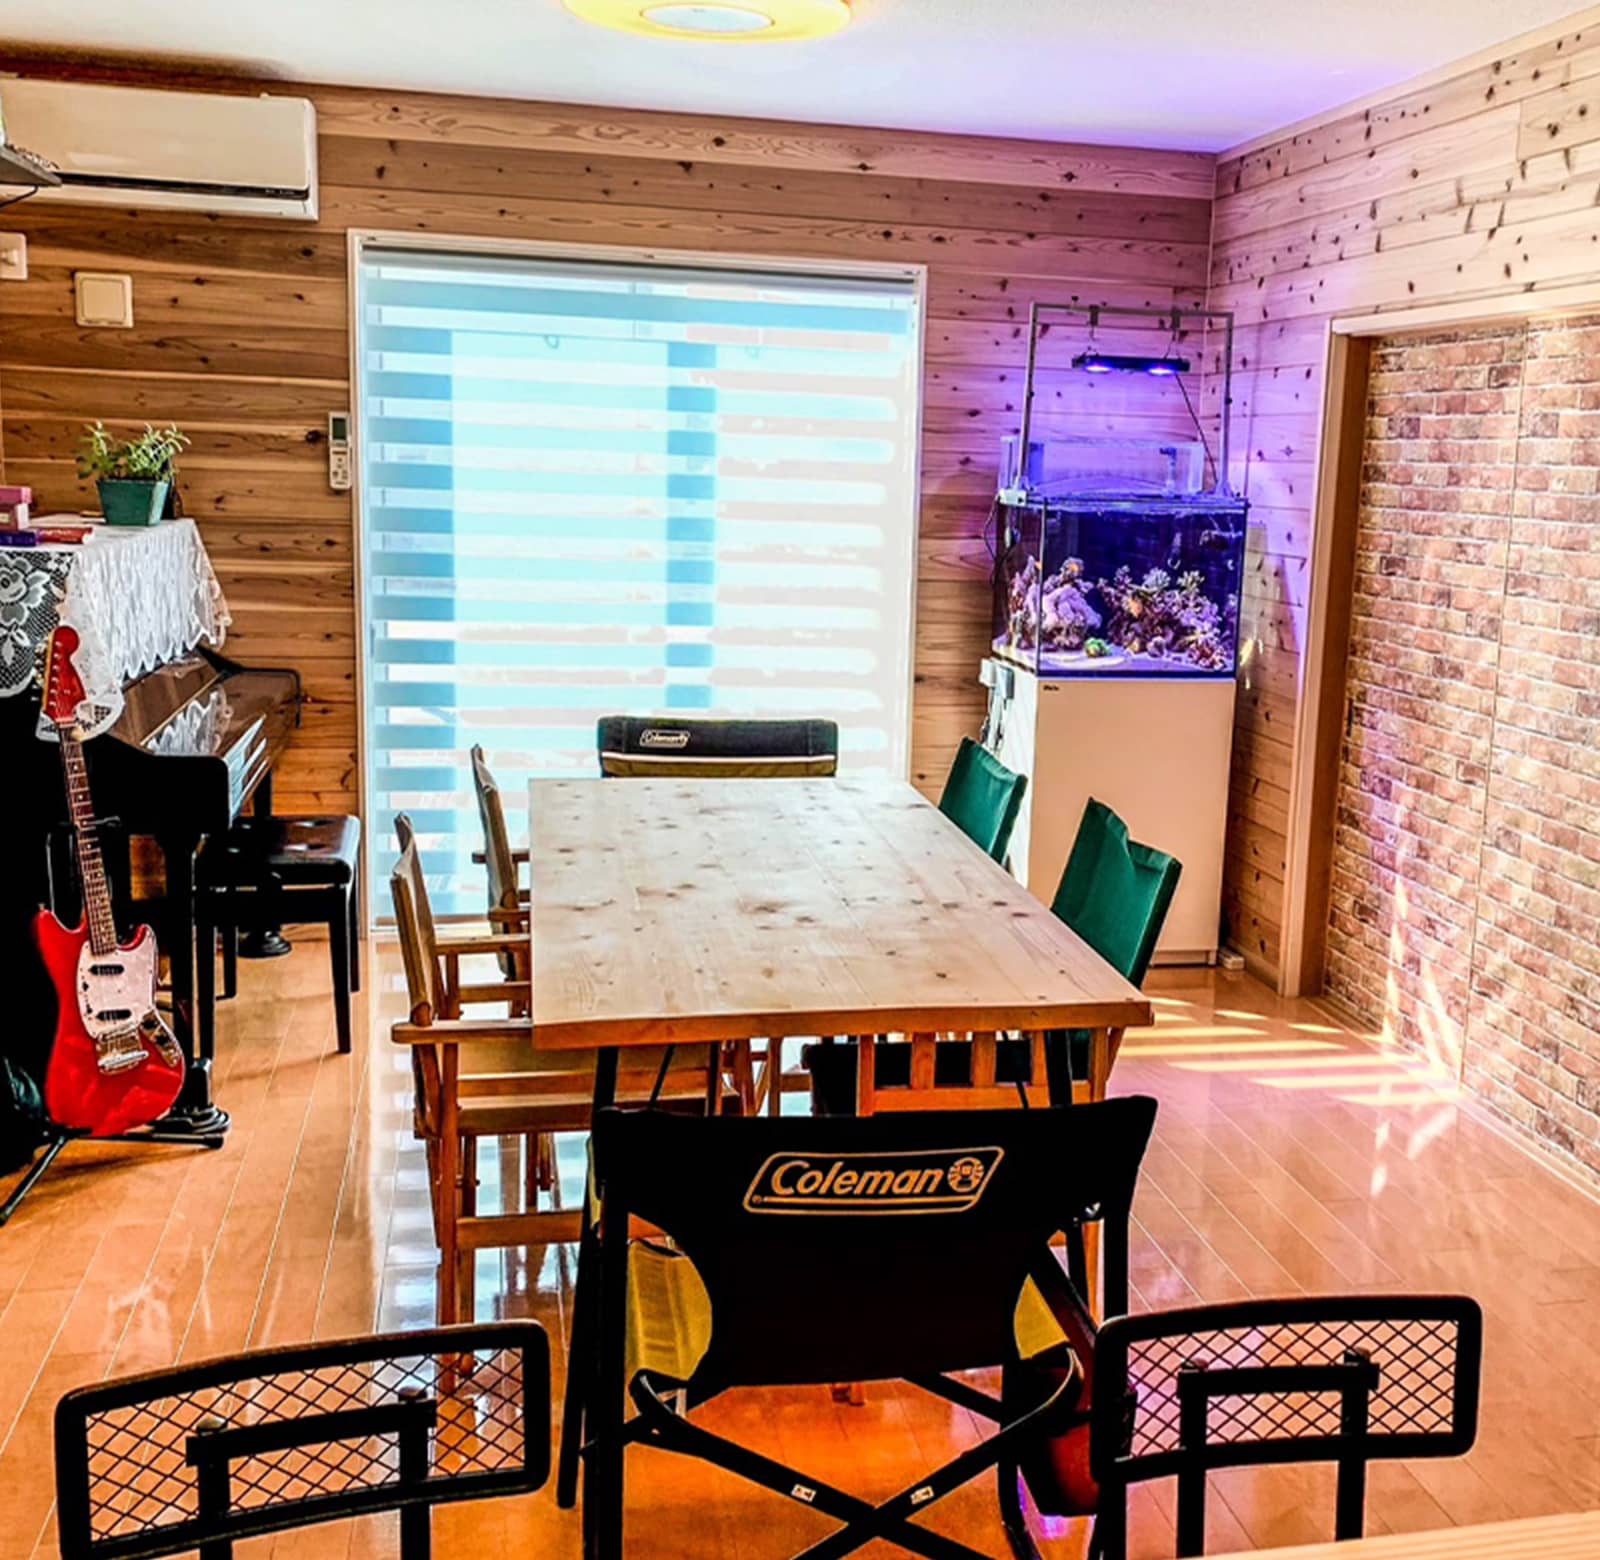 木製のテーブルと椅子が置かれた室内。部屋の奥にはピアノやギター、水槽が設置されている。